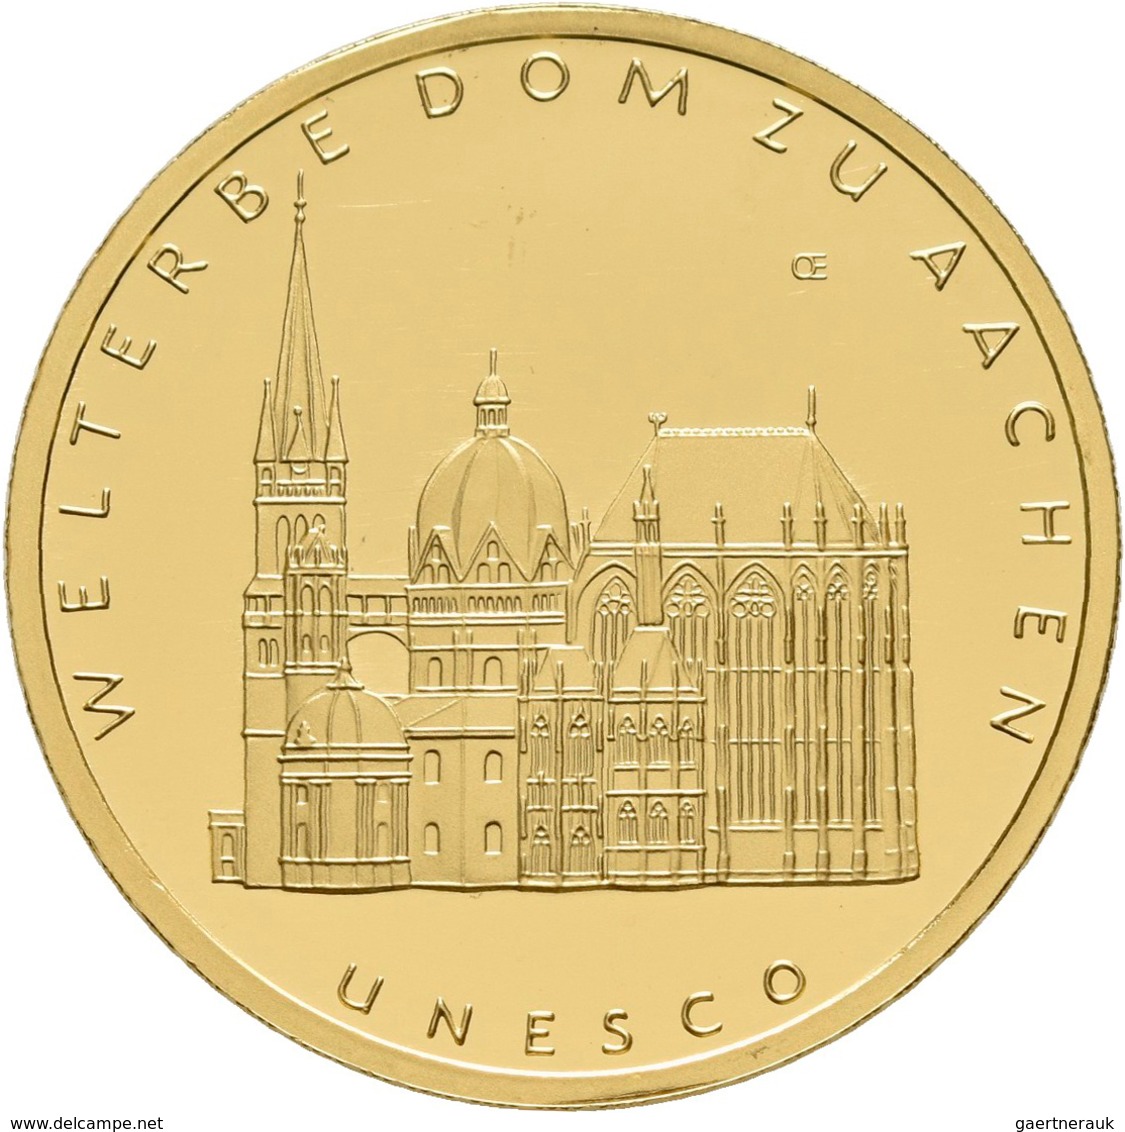 Deutschland - Anlagegold: 5 x 100 Euro 2012 Dom zu Aachen (A,D,F,J,J), in Originalkapsel und Etui, m